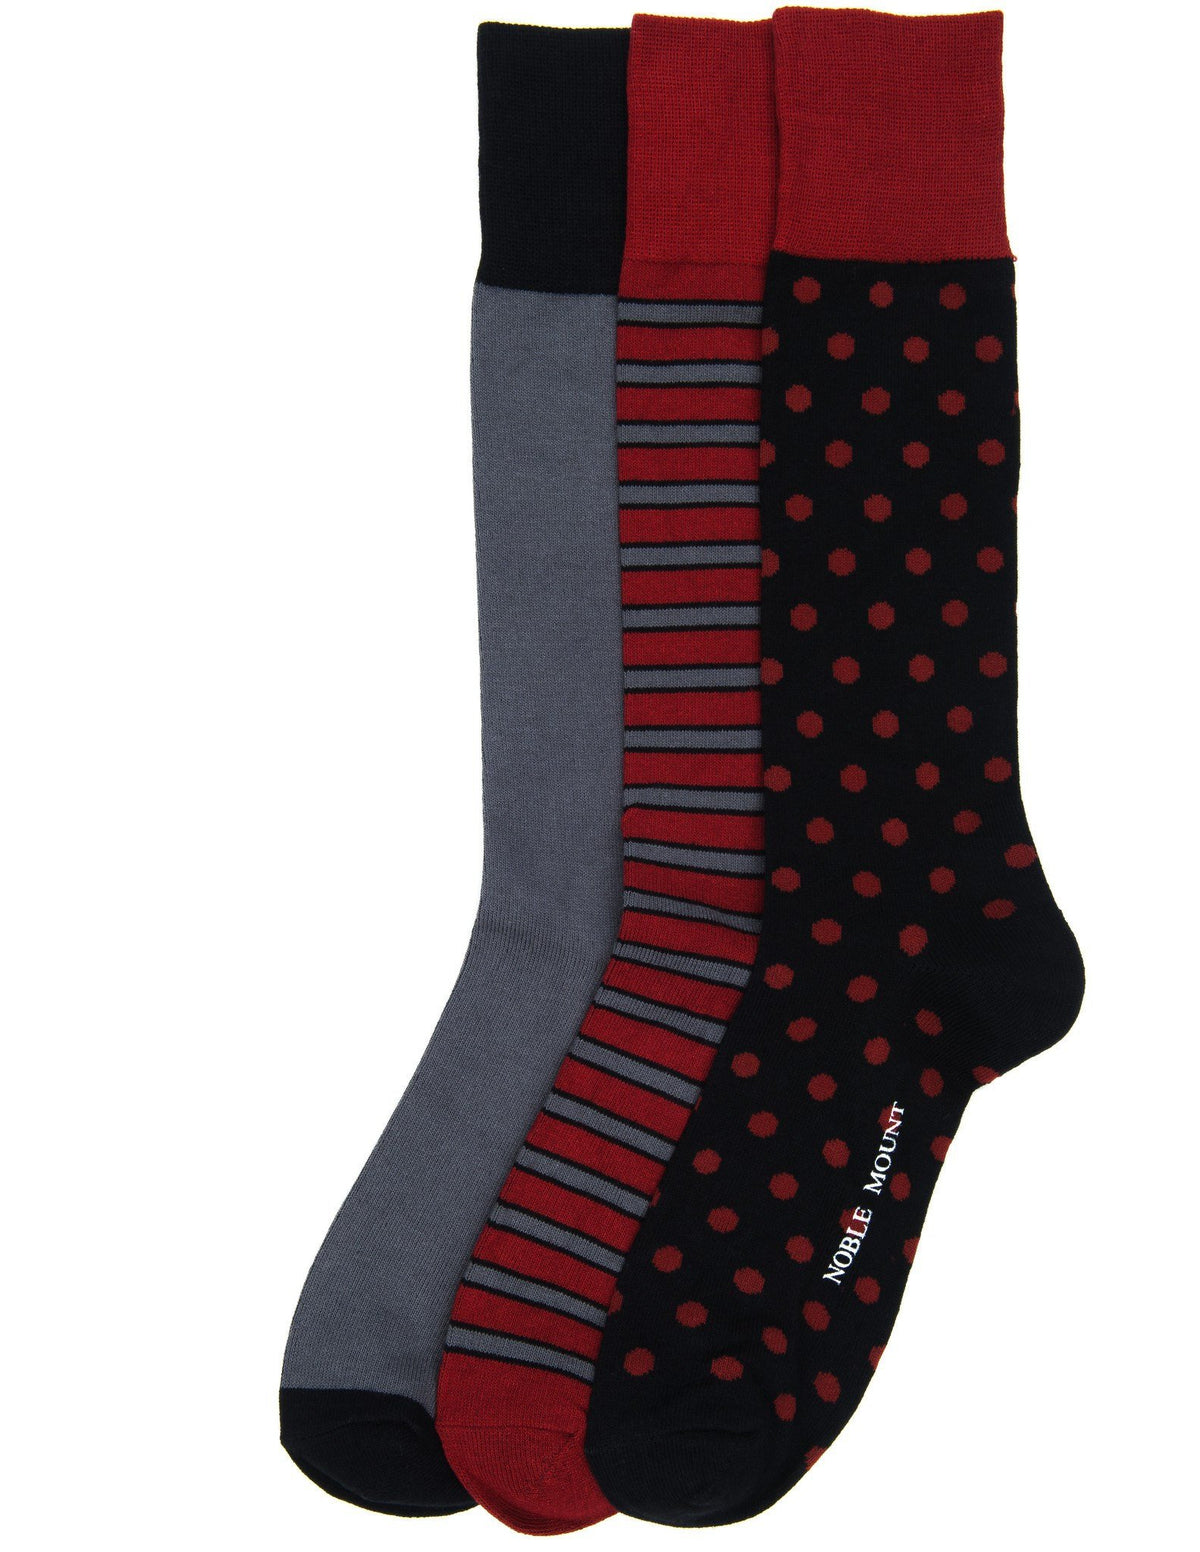 Men's Combed Cotton Dress Socks 3-Pack - Set A5